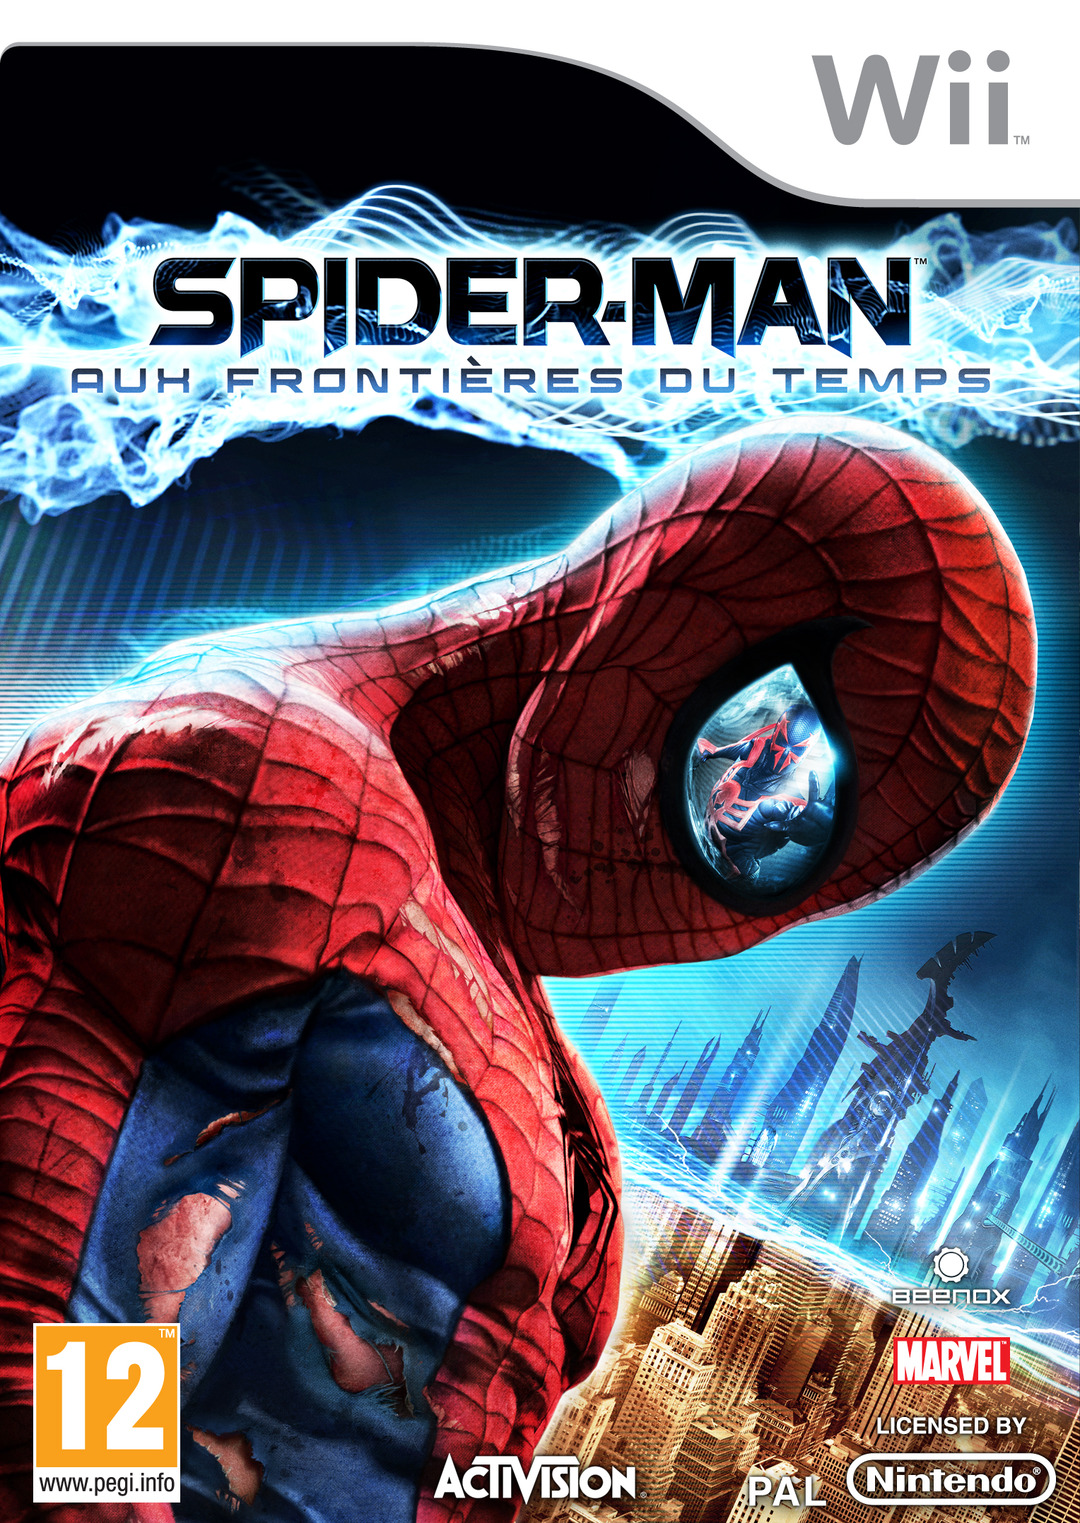 http://image.jeuxvideo.com/images/jaquettes/00041125/jaquette-spider-man-aux-frontieres-du-temps-wii-cover-avant-g-1313781680.jpg